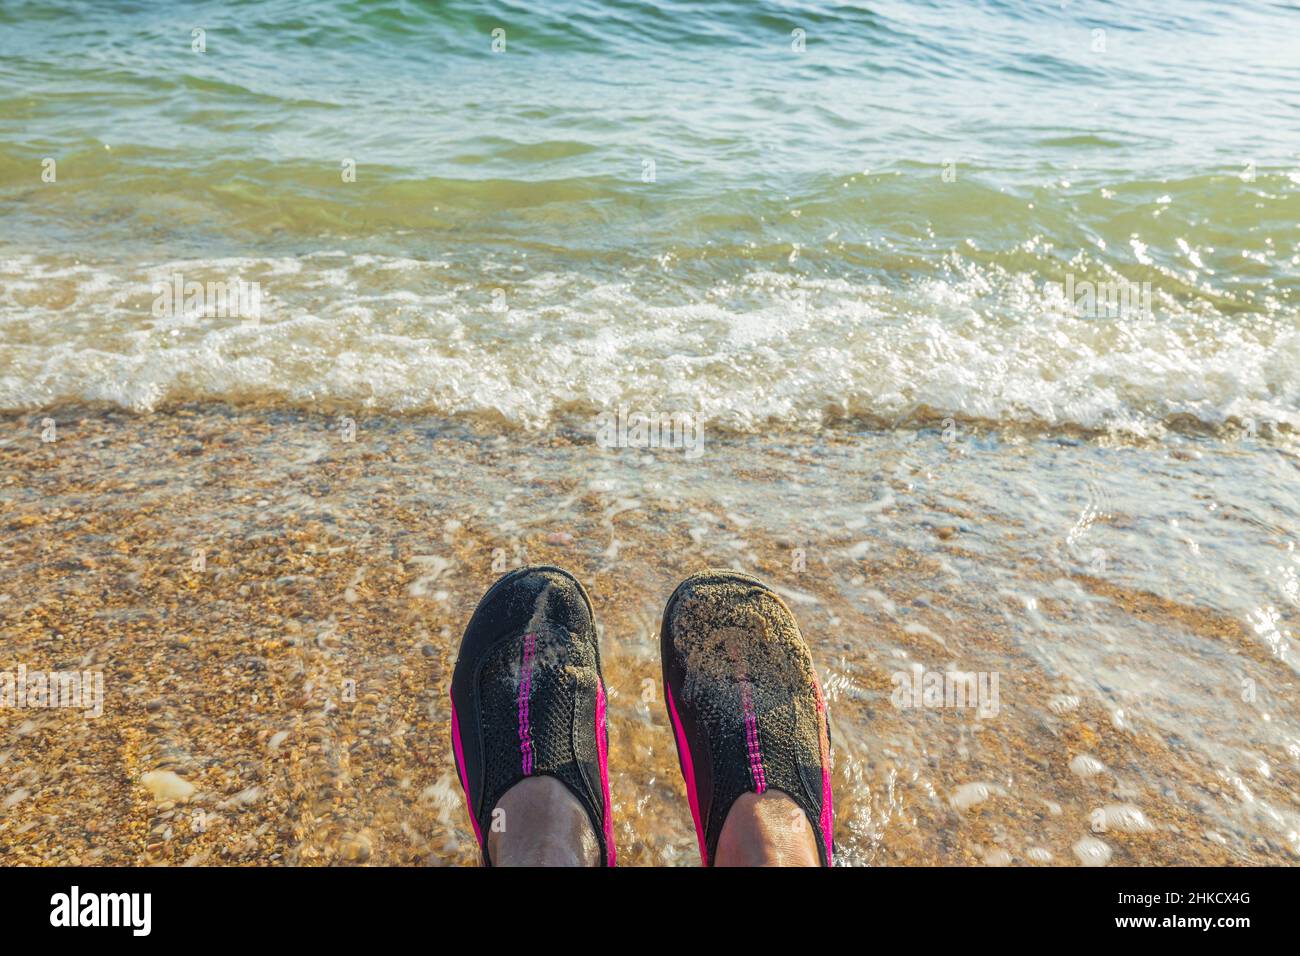 Blick auf Badeschuhe auf den Füßen eines Mannes vor dem Hintergrund des Meeres. Griechenland. Stockfoto